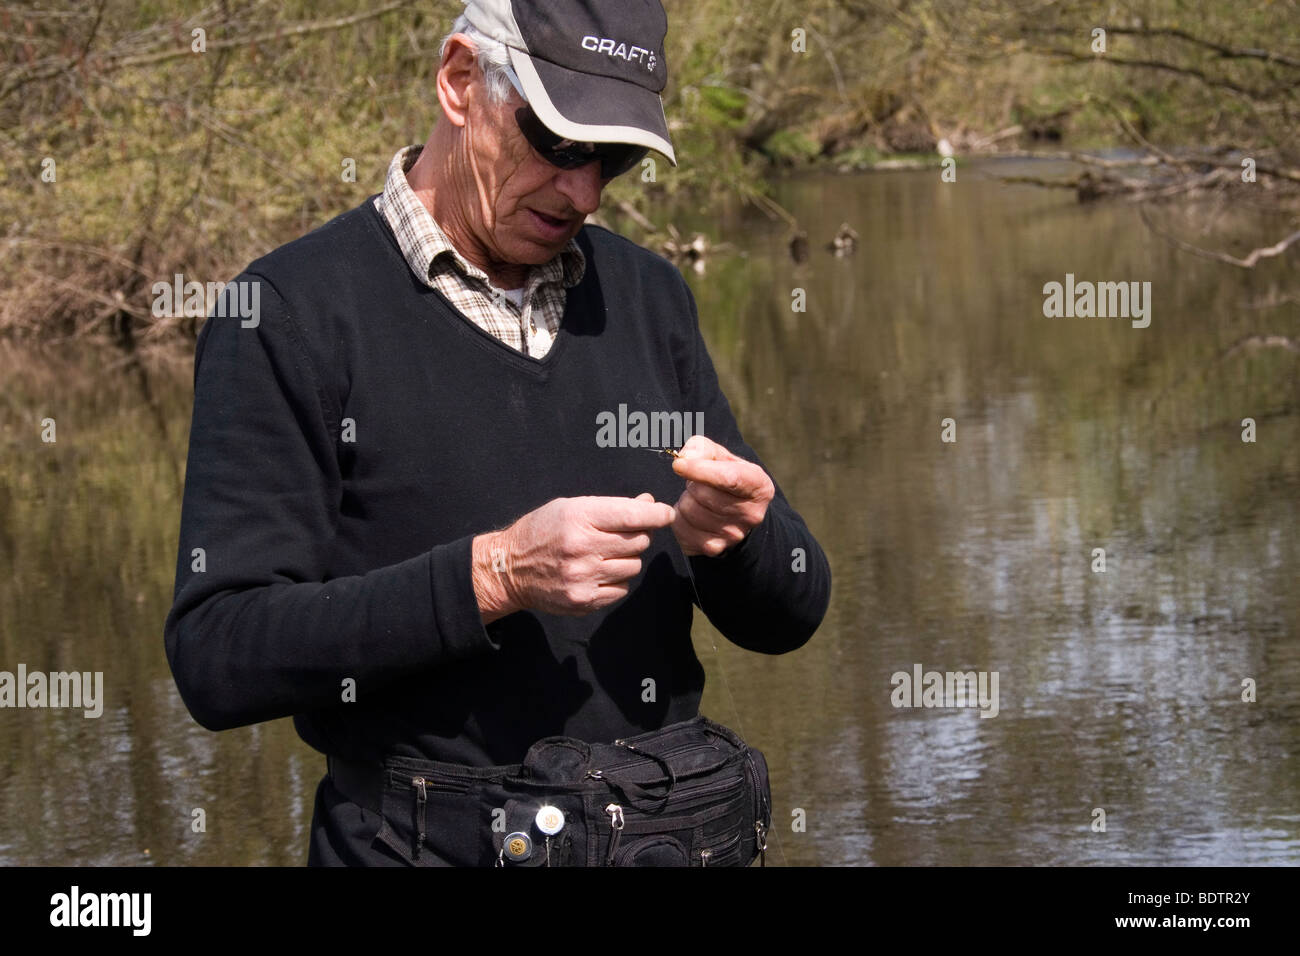 Fly-fischer, pêche à la mouche, appâts, Allemagne Banque D'Images